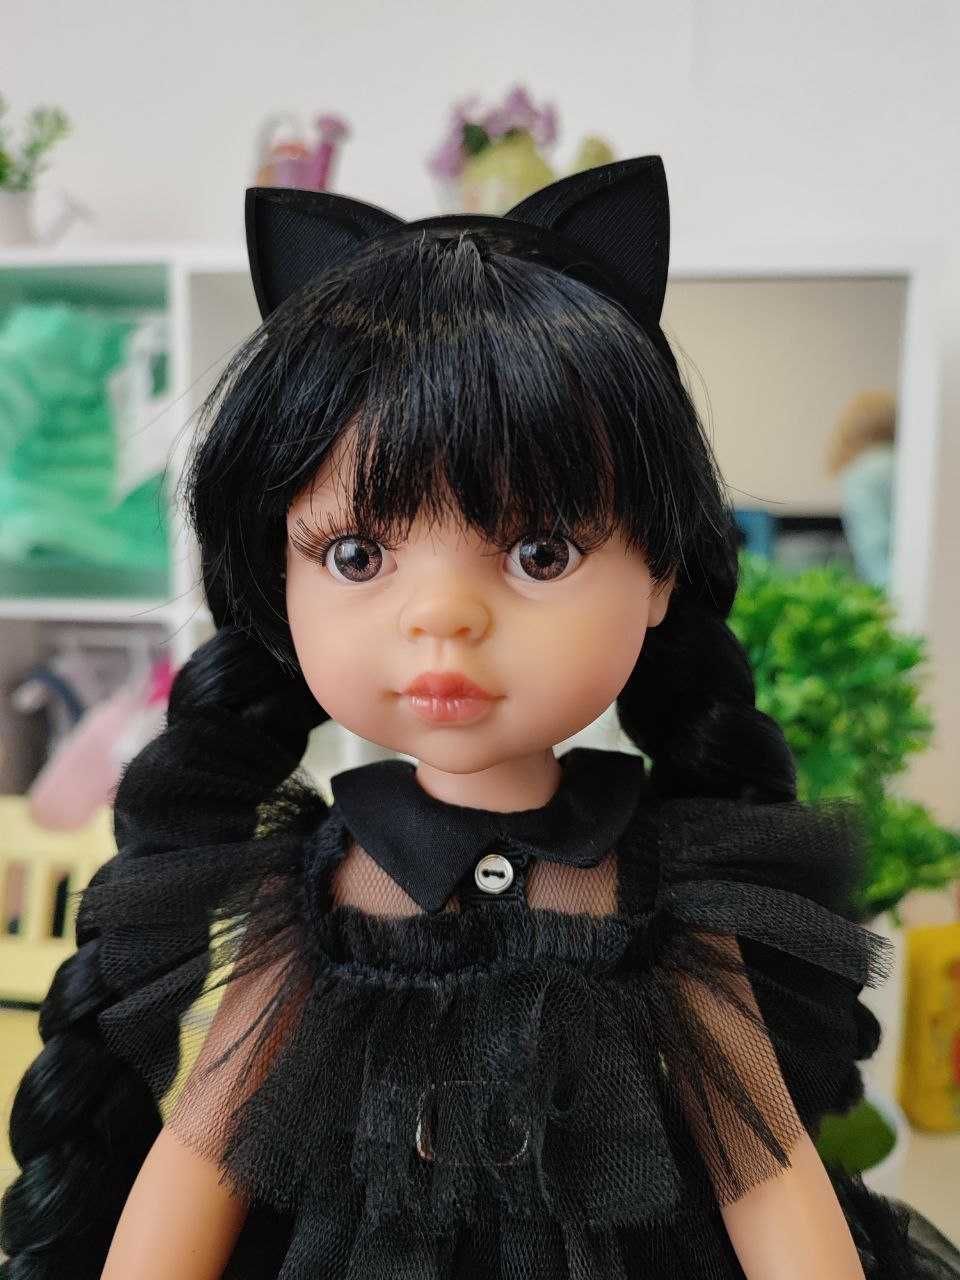 Кукла, лялька Венсдей Wednesday в нарядном платье Паола Рейна, 32 см